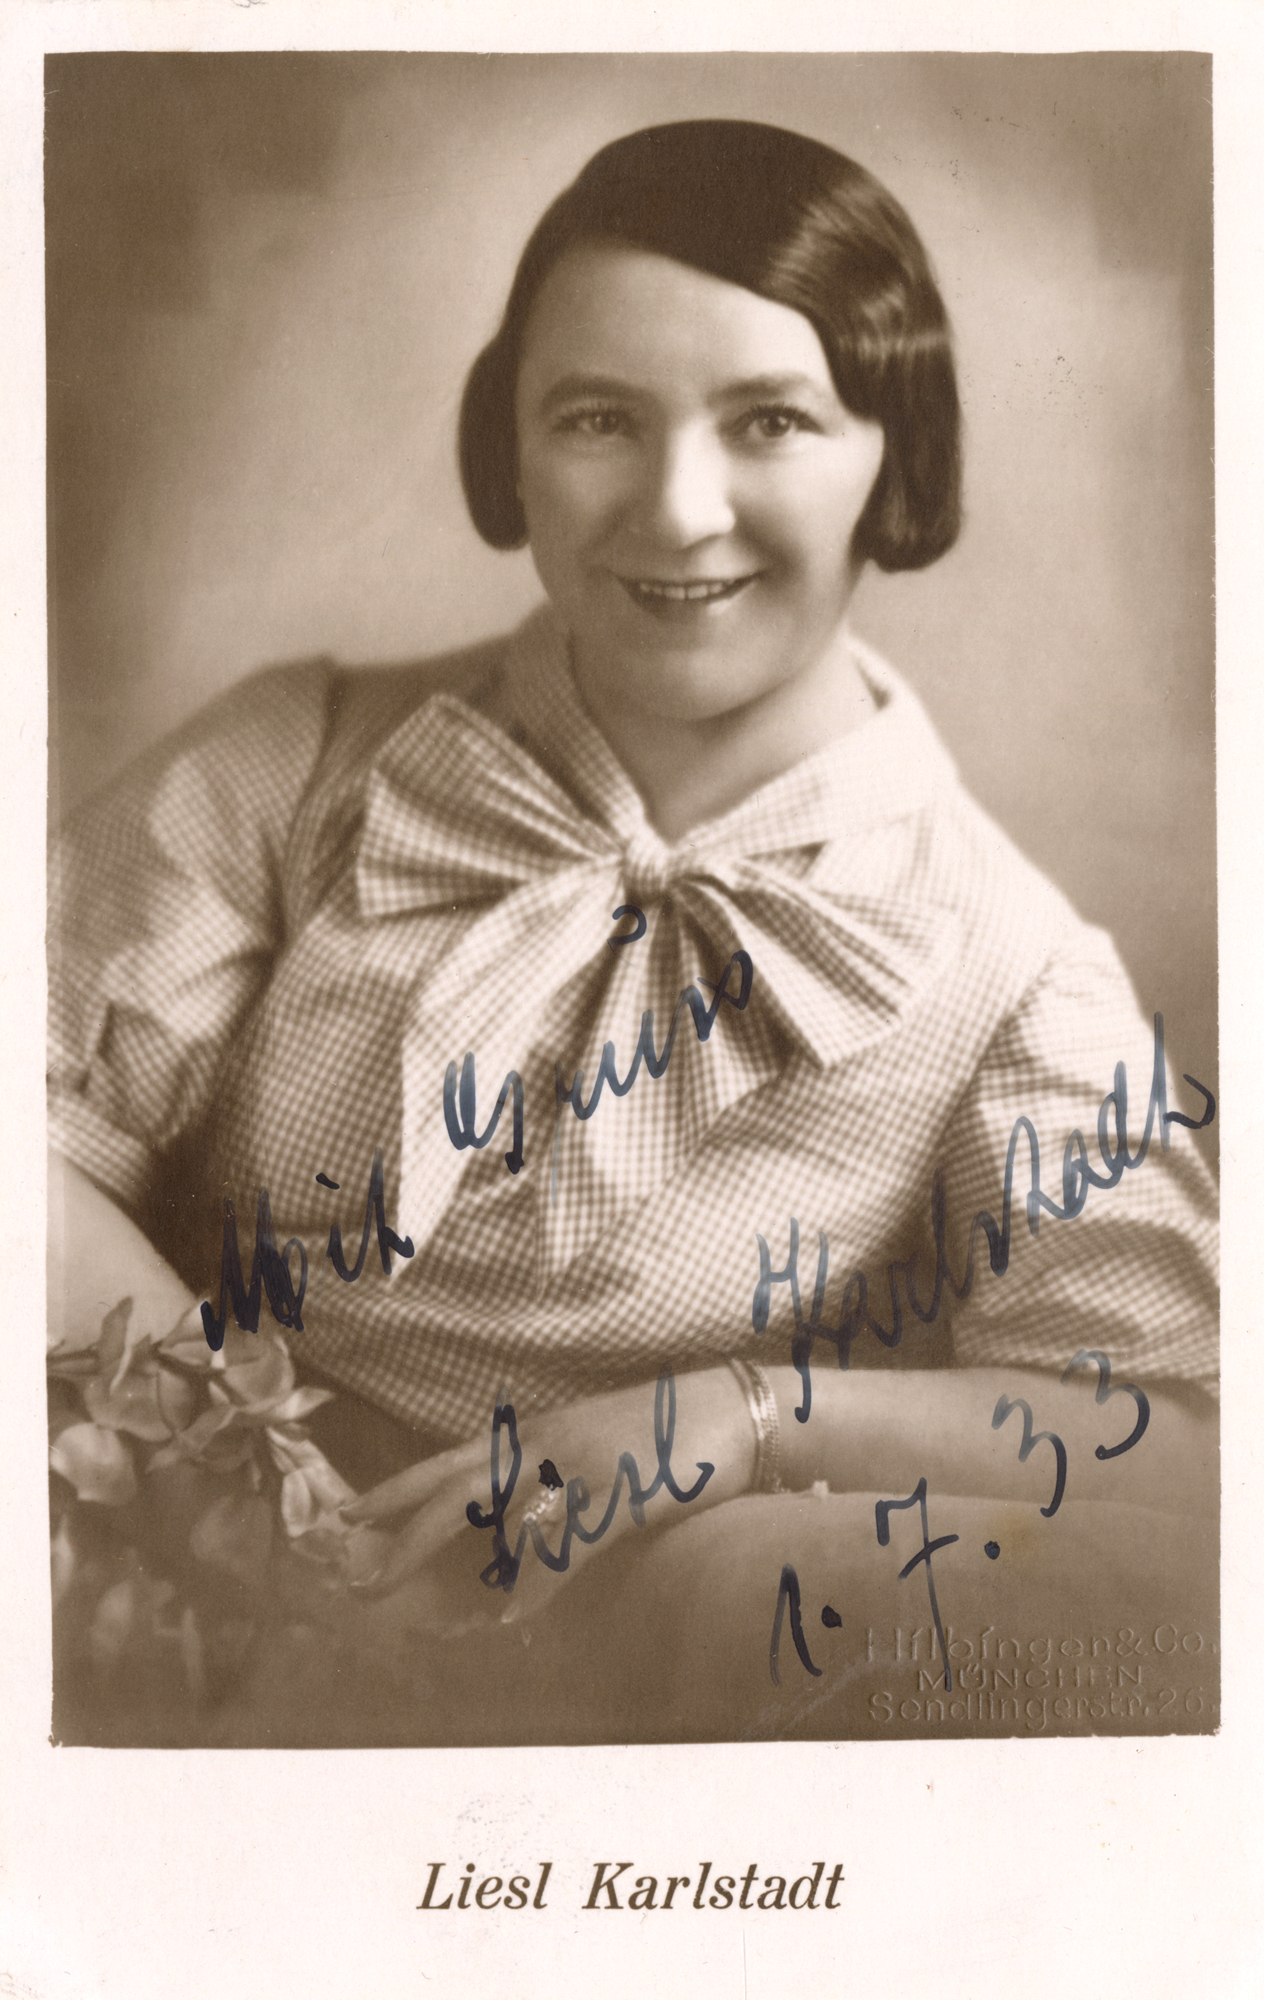 Foto Hilbinger & Co, München, Liesl Karlstadt, Porträt mit Autograph, um 1933